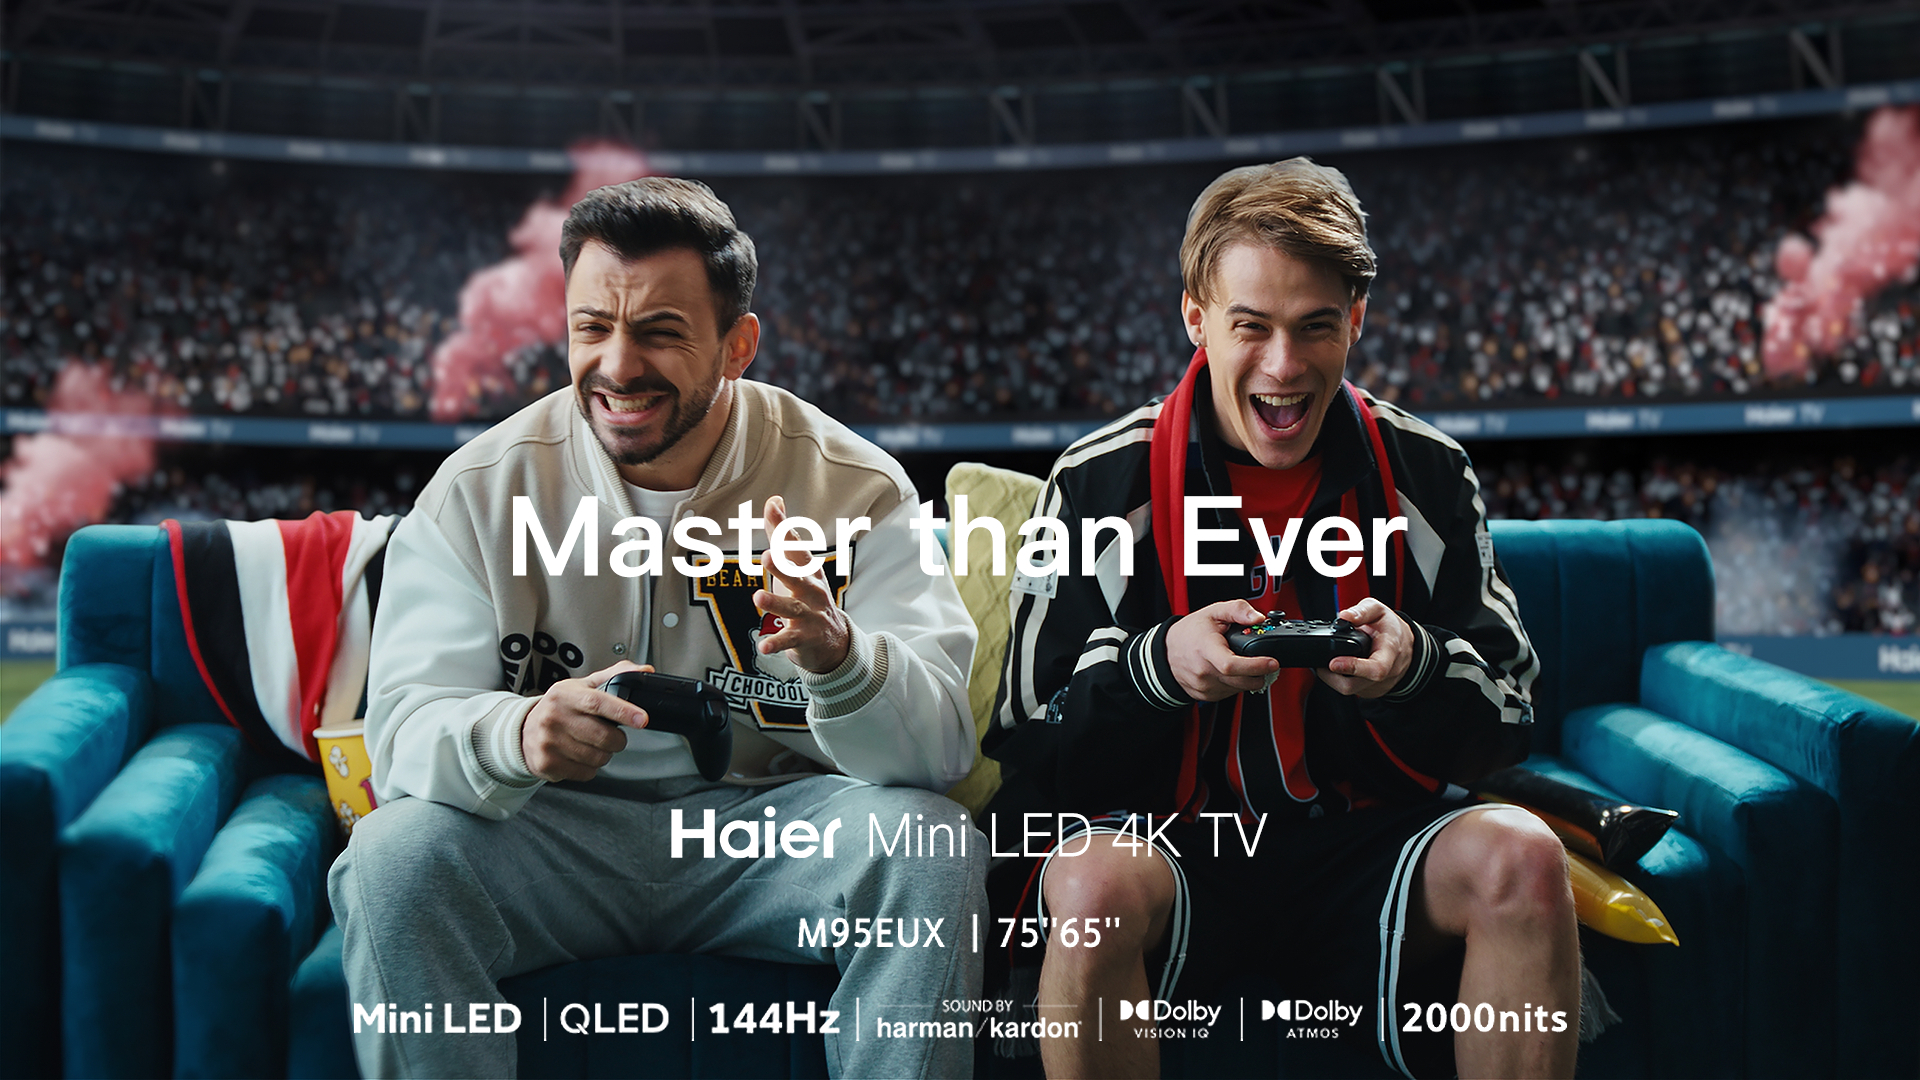 海尔 Haier Mini LED 4K TV 欧洲杯海外电视广告片